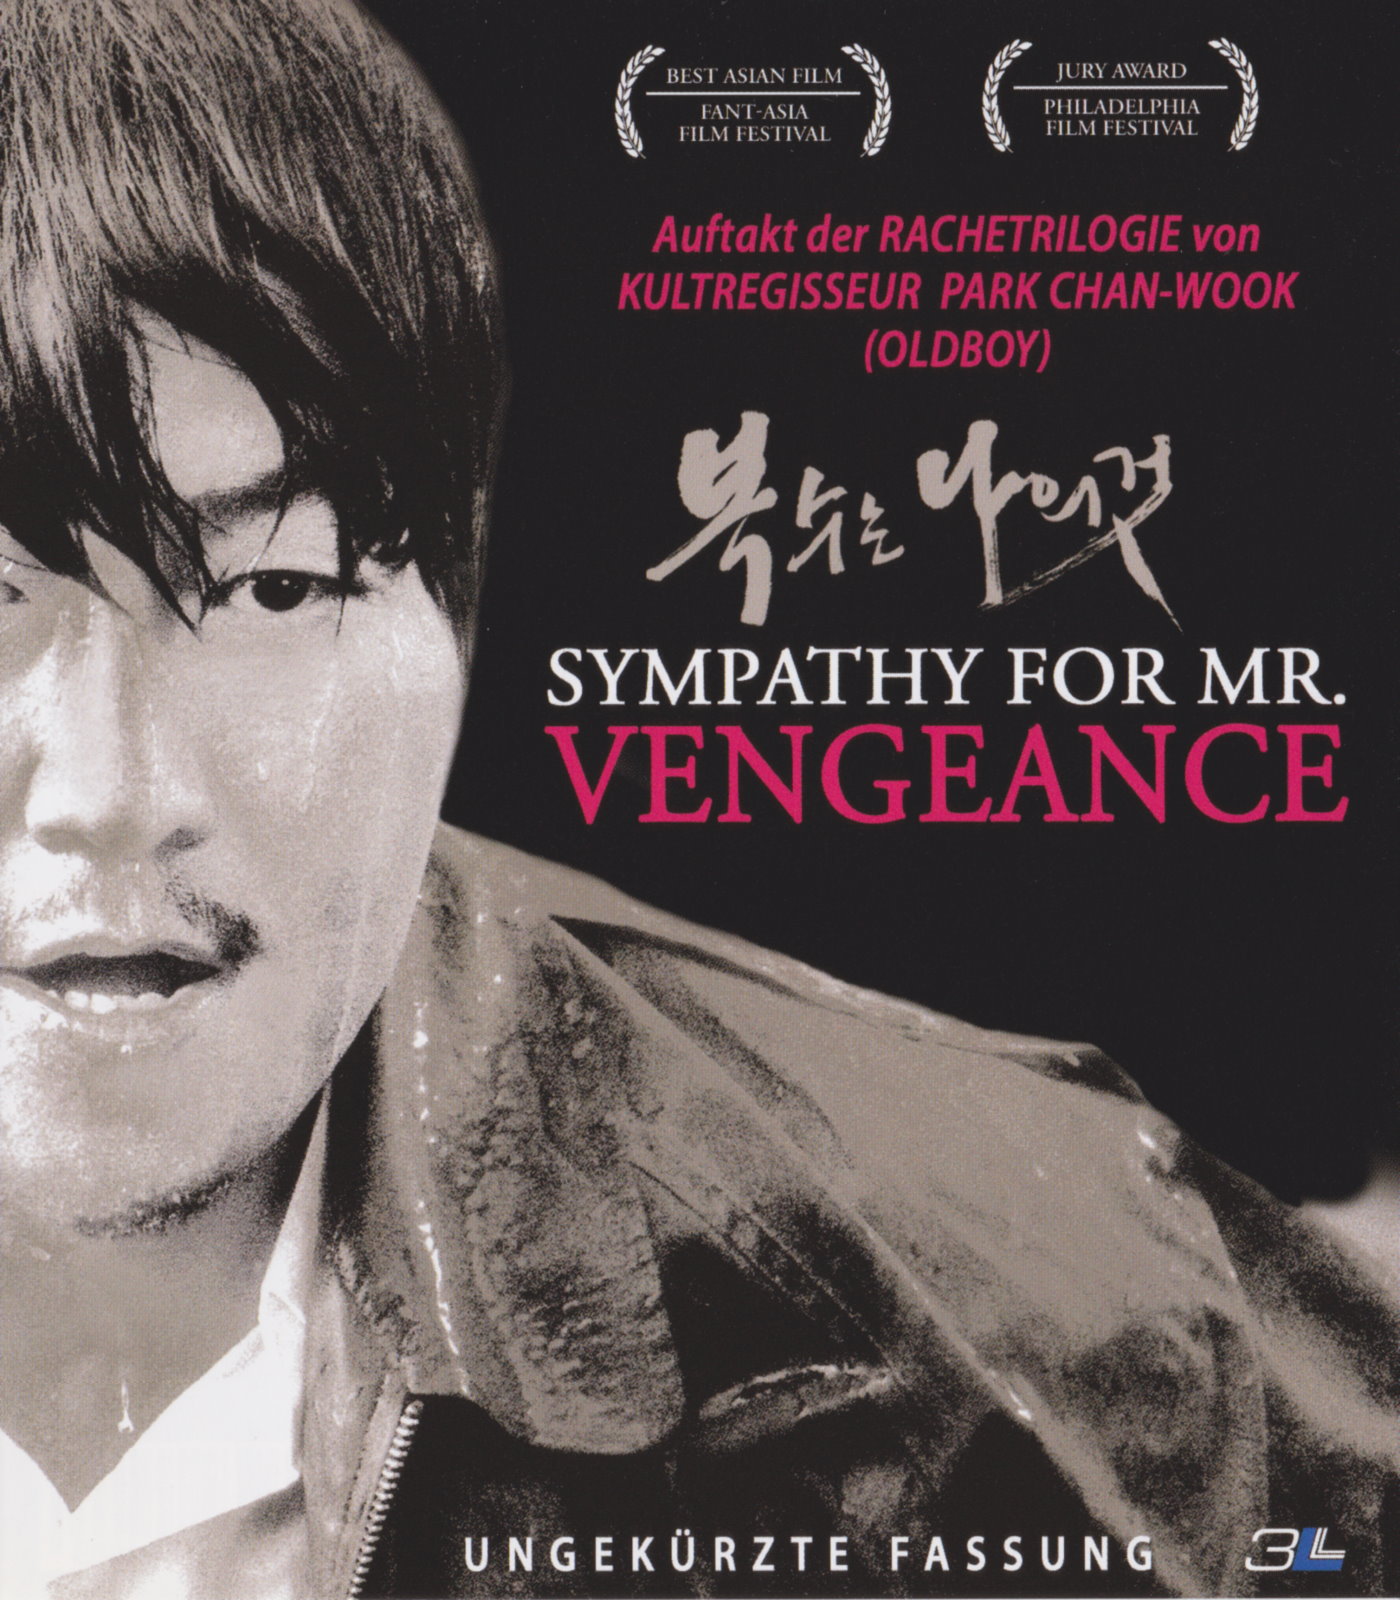 Cover - Sympathy for Mr. Vengeance.jpg